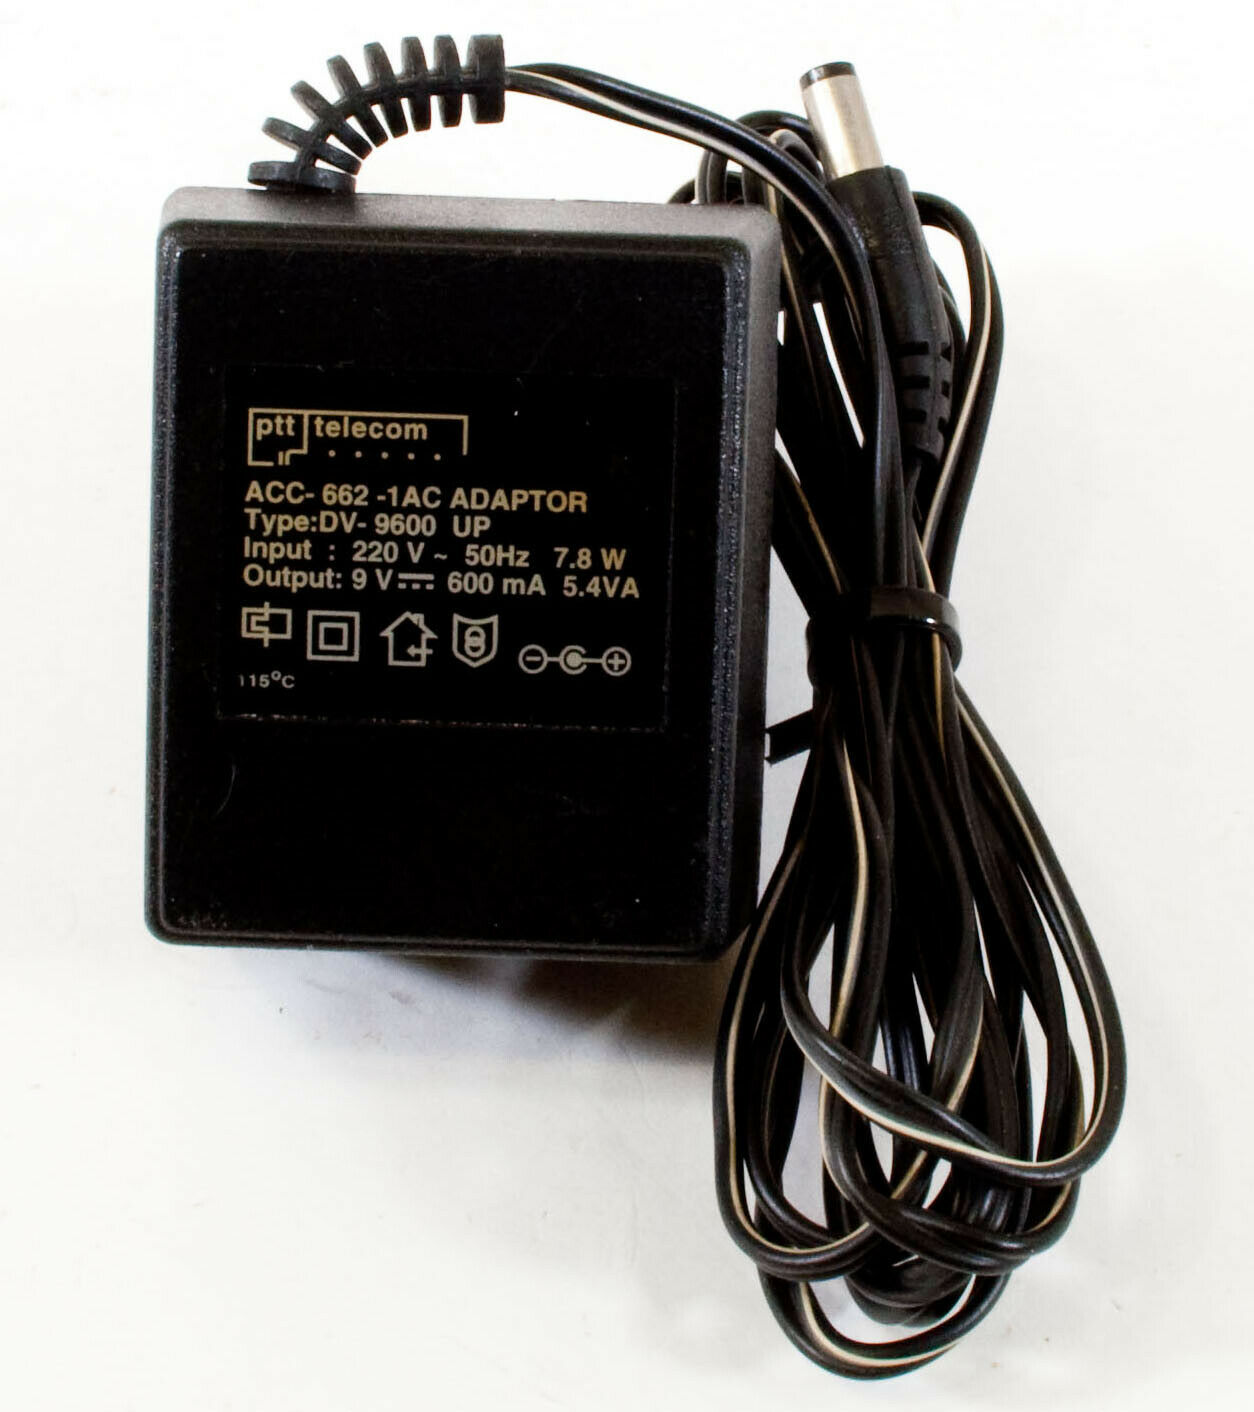 PTT Telecom ACC-662-1AC AC Adapter 9V 600mA Original Power Supply Europlug Compat - Click Image to Close